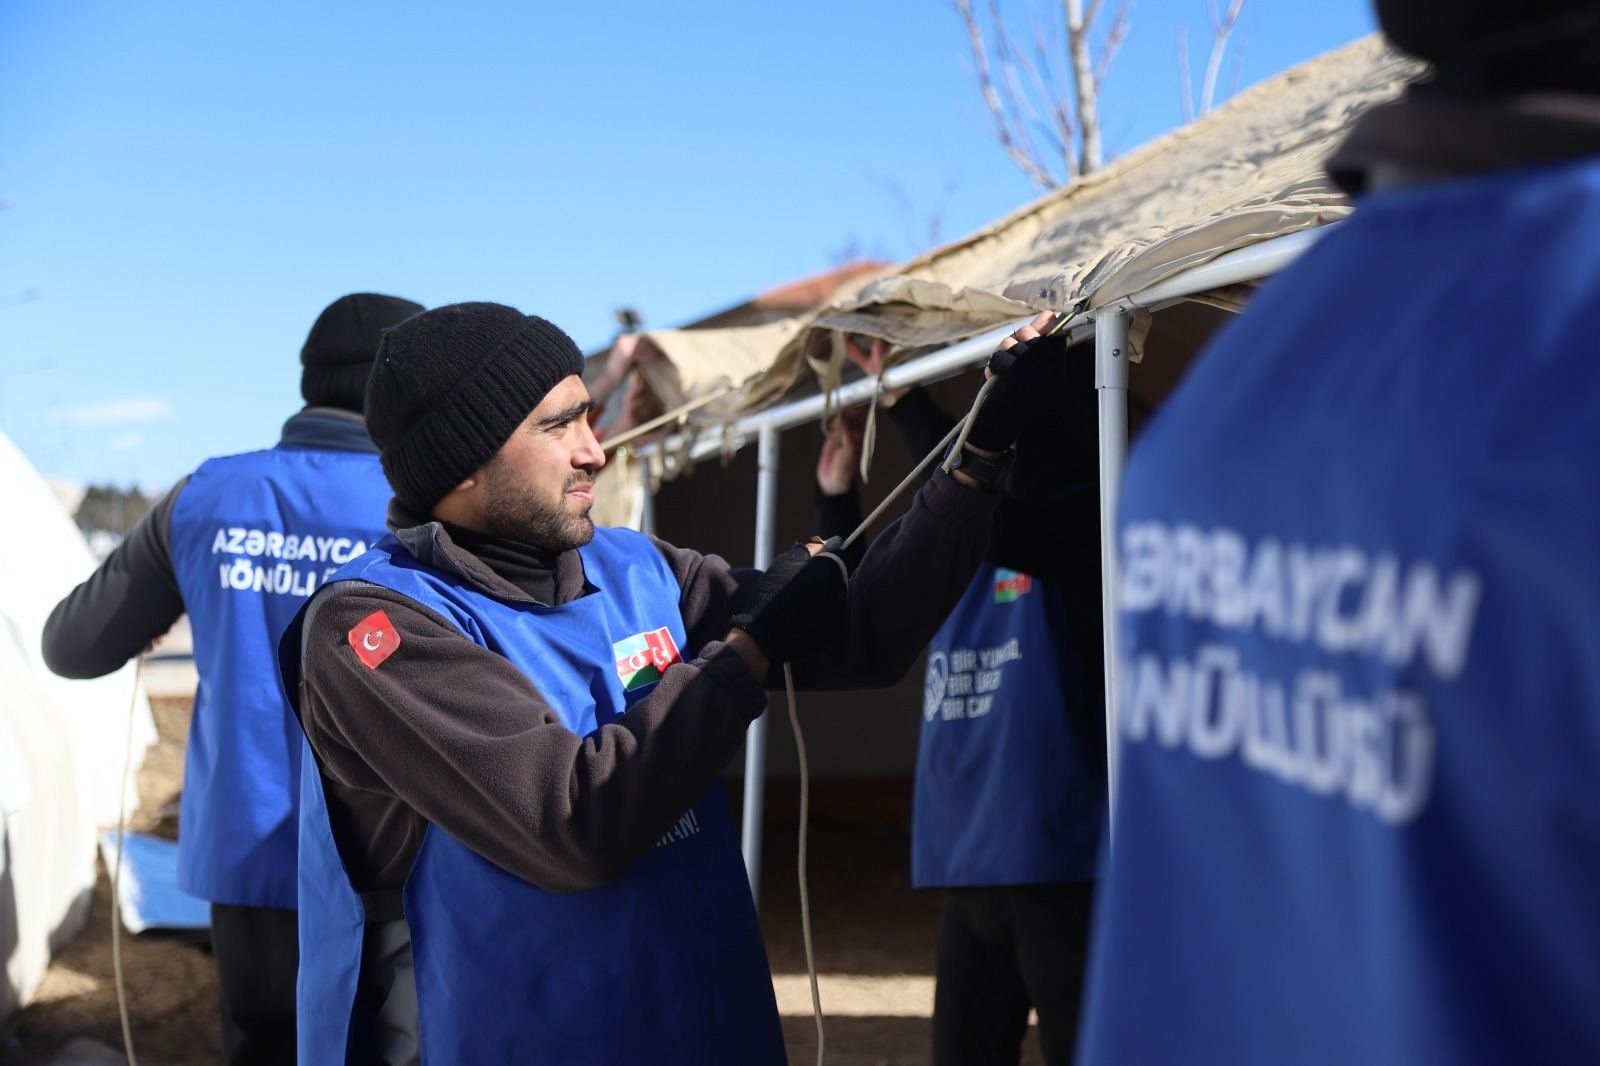 Азербайджанские волонтеры продолжают свою гуманитарную миссию в Турции